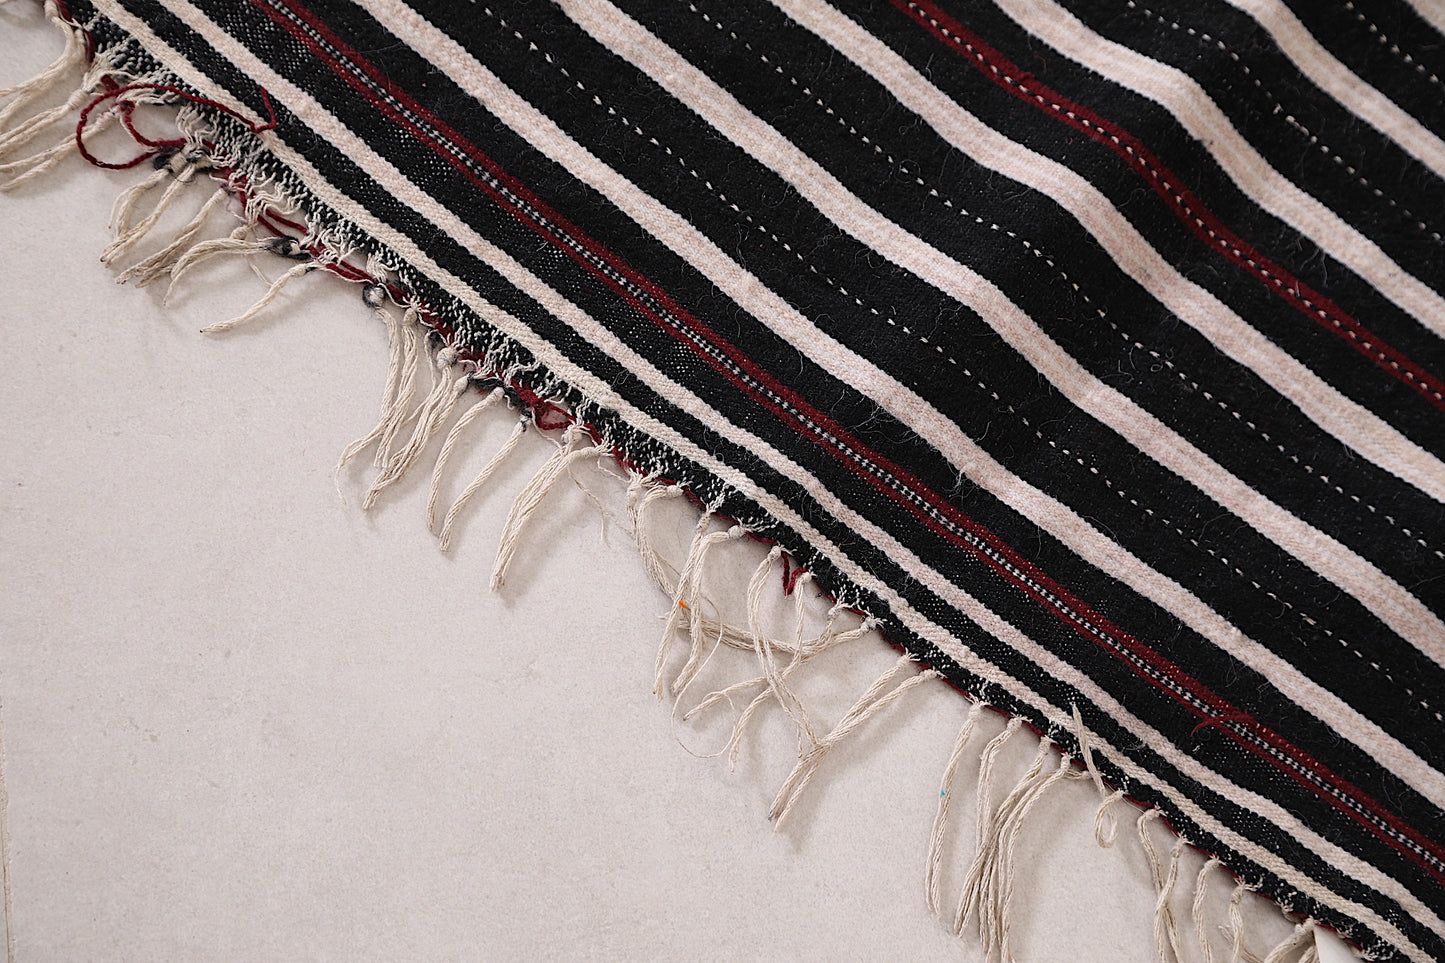 Handira berber rug , Moroccan wedding blanket 3.6 FT x 5.7 FT